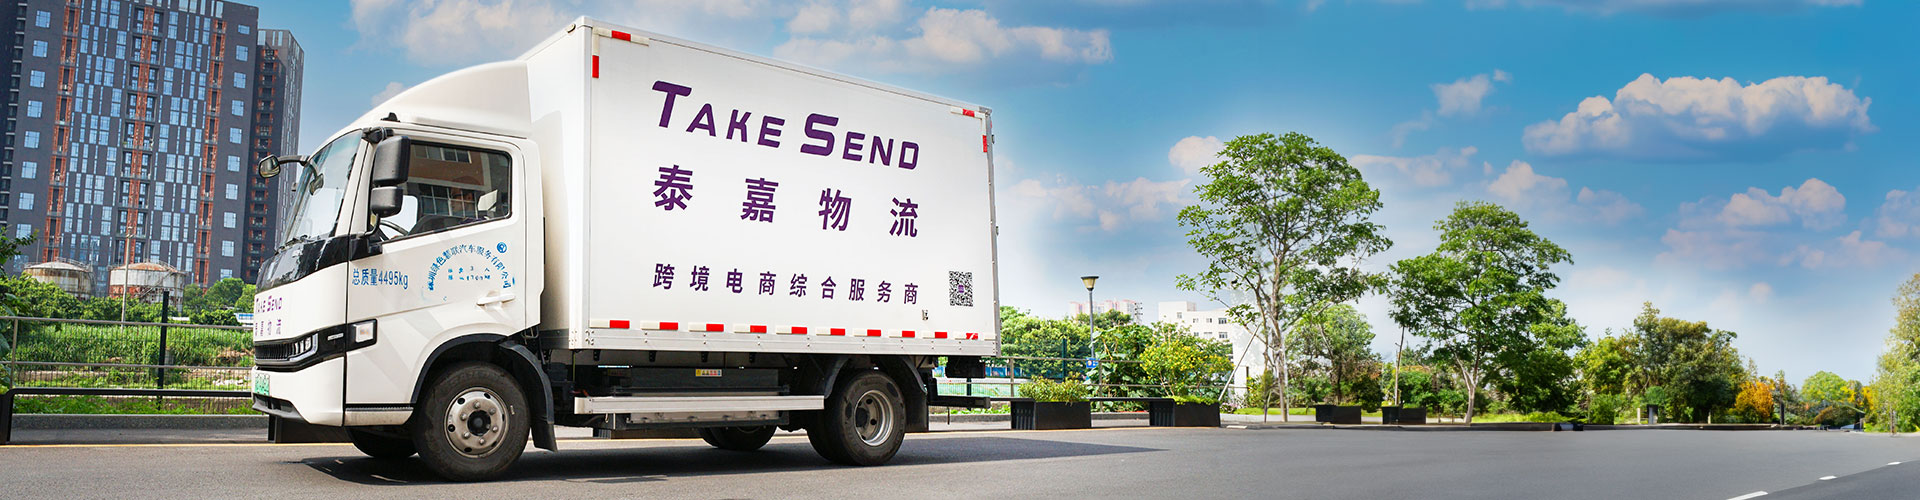 深圳泰嘉物流公司致力于提供专业优质的国际快递服务